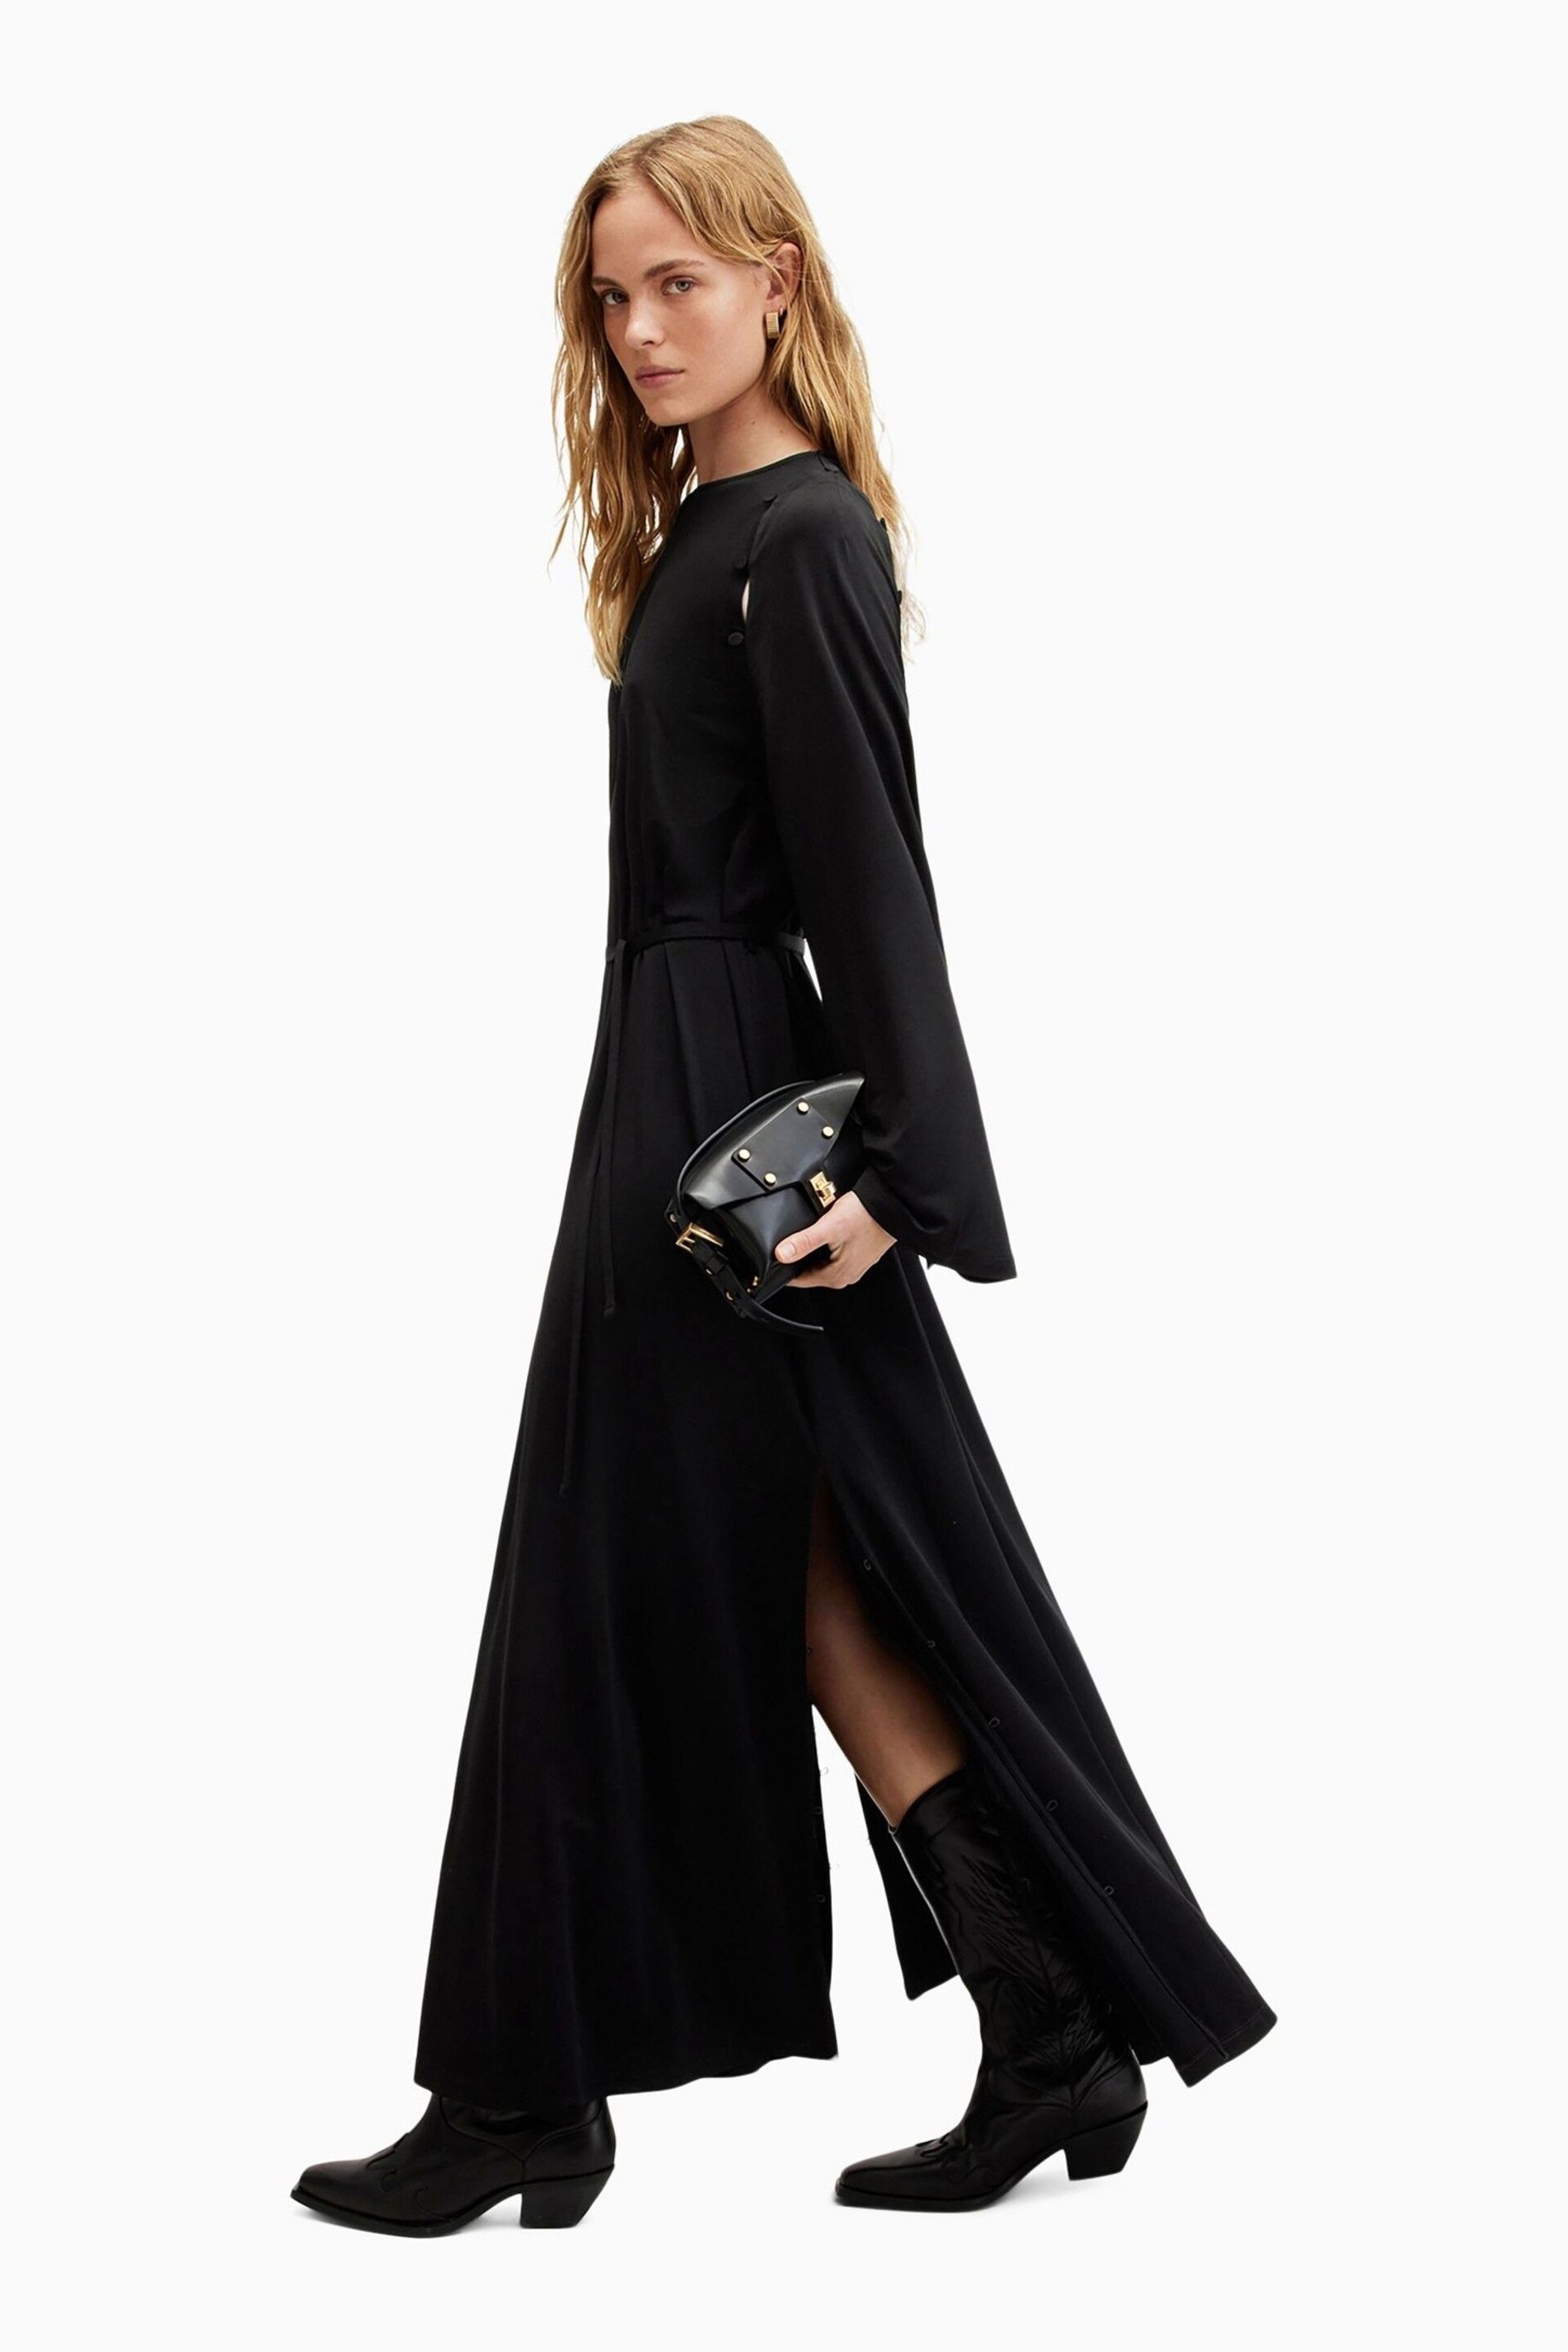 AllSaints Black Susannah Dress - Image 3 of 8